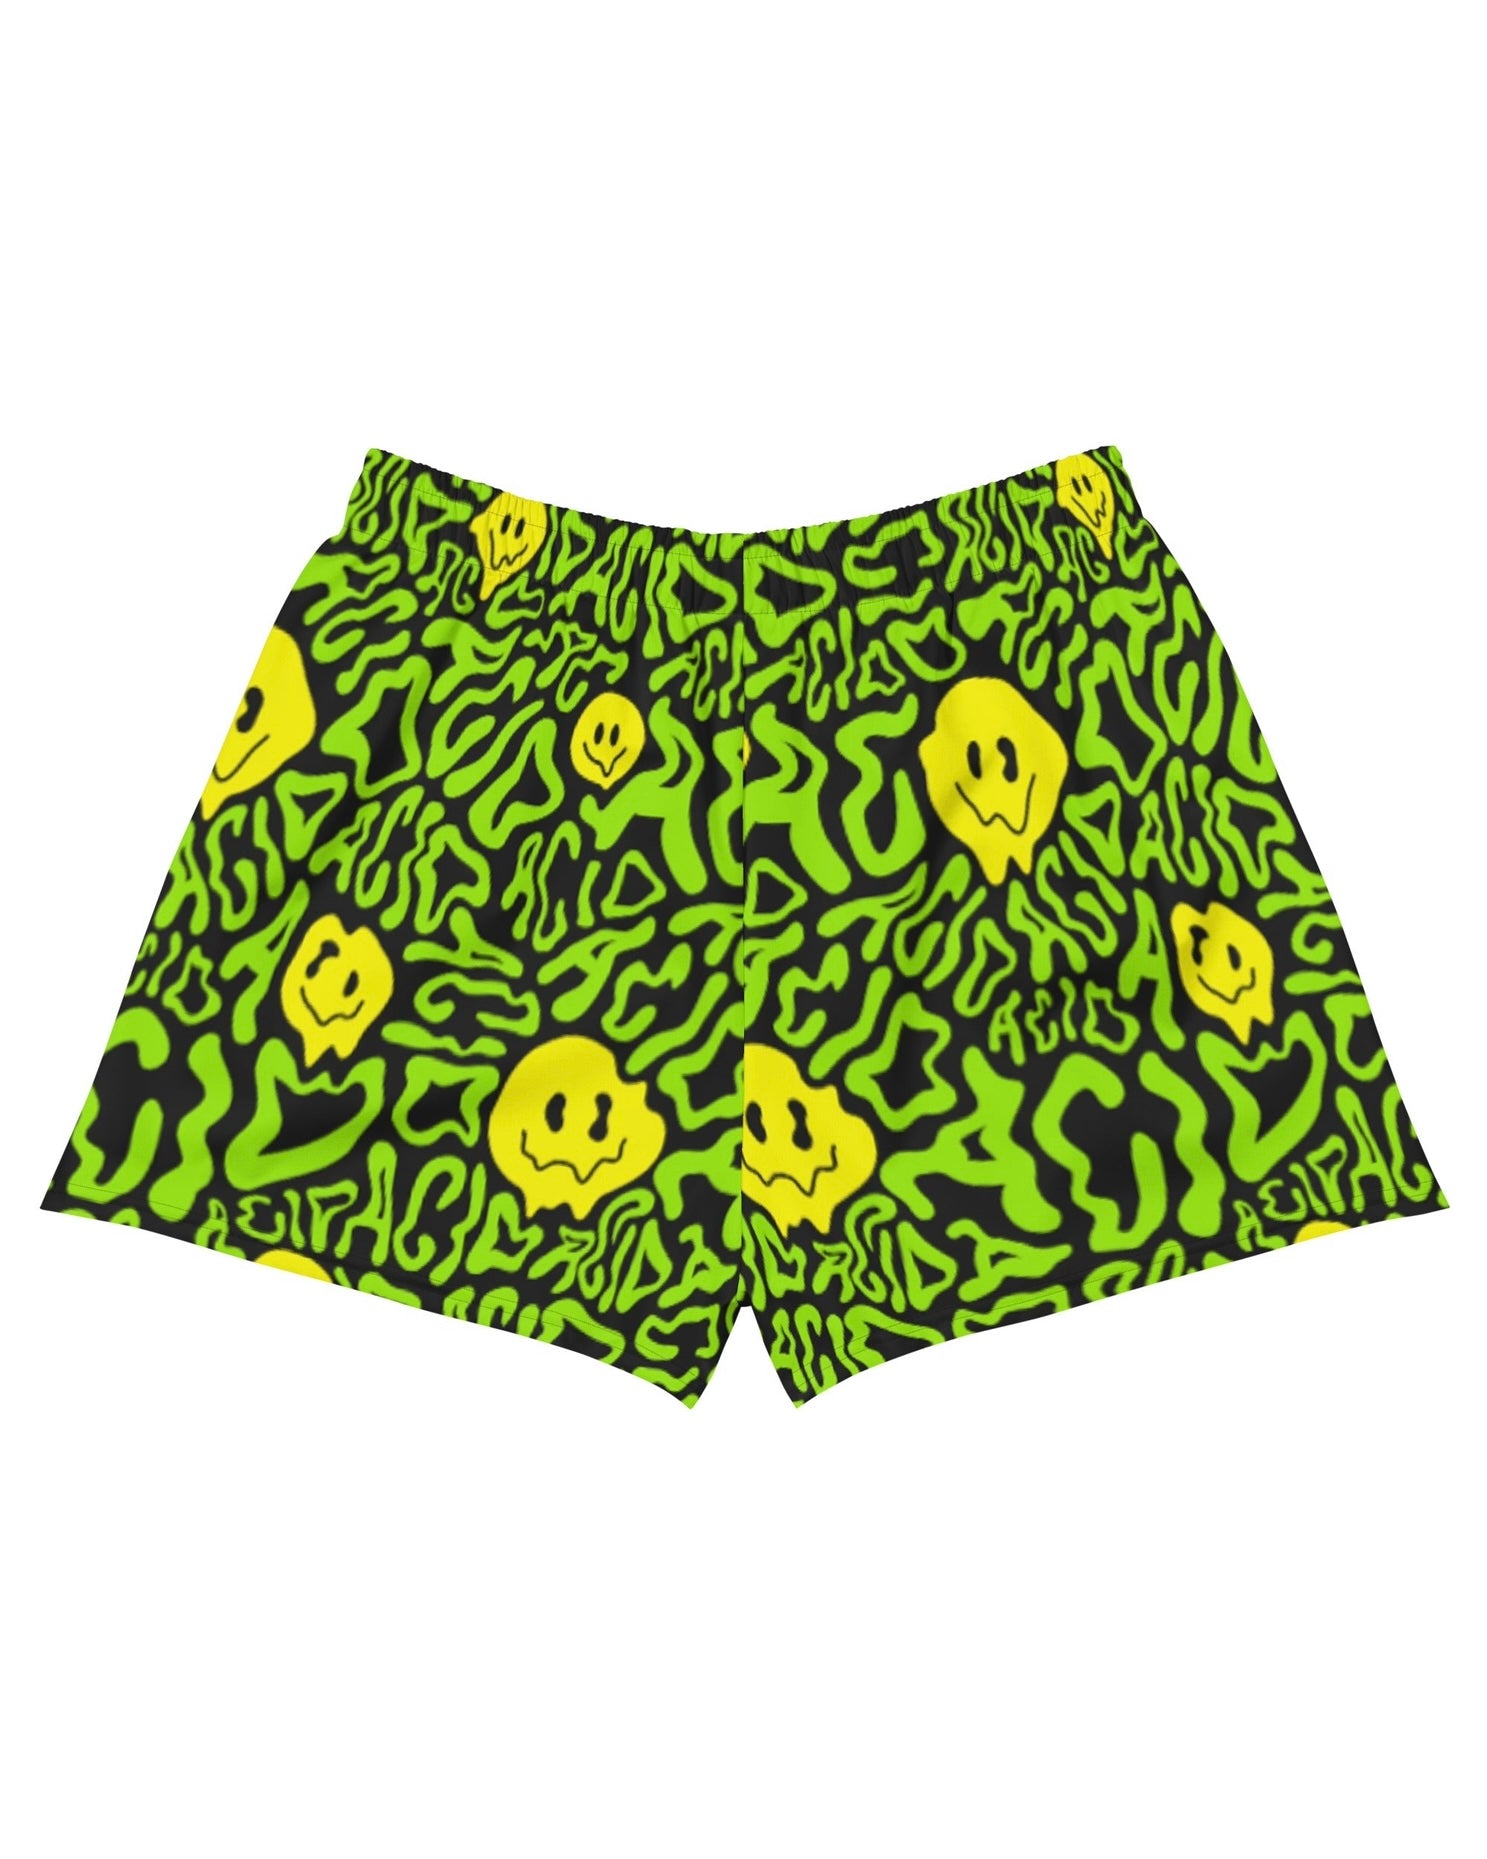 Acid Smilez Recycled Shorts, Athletic Shorts, - One Stop Rave